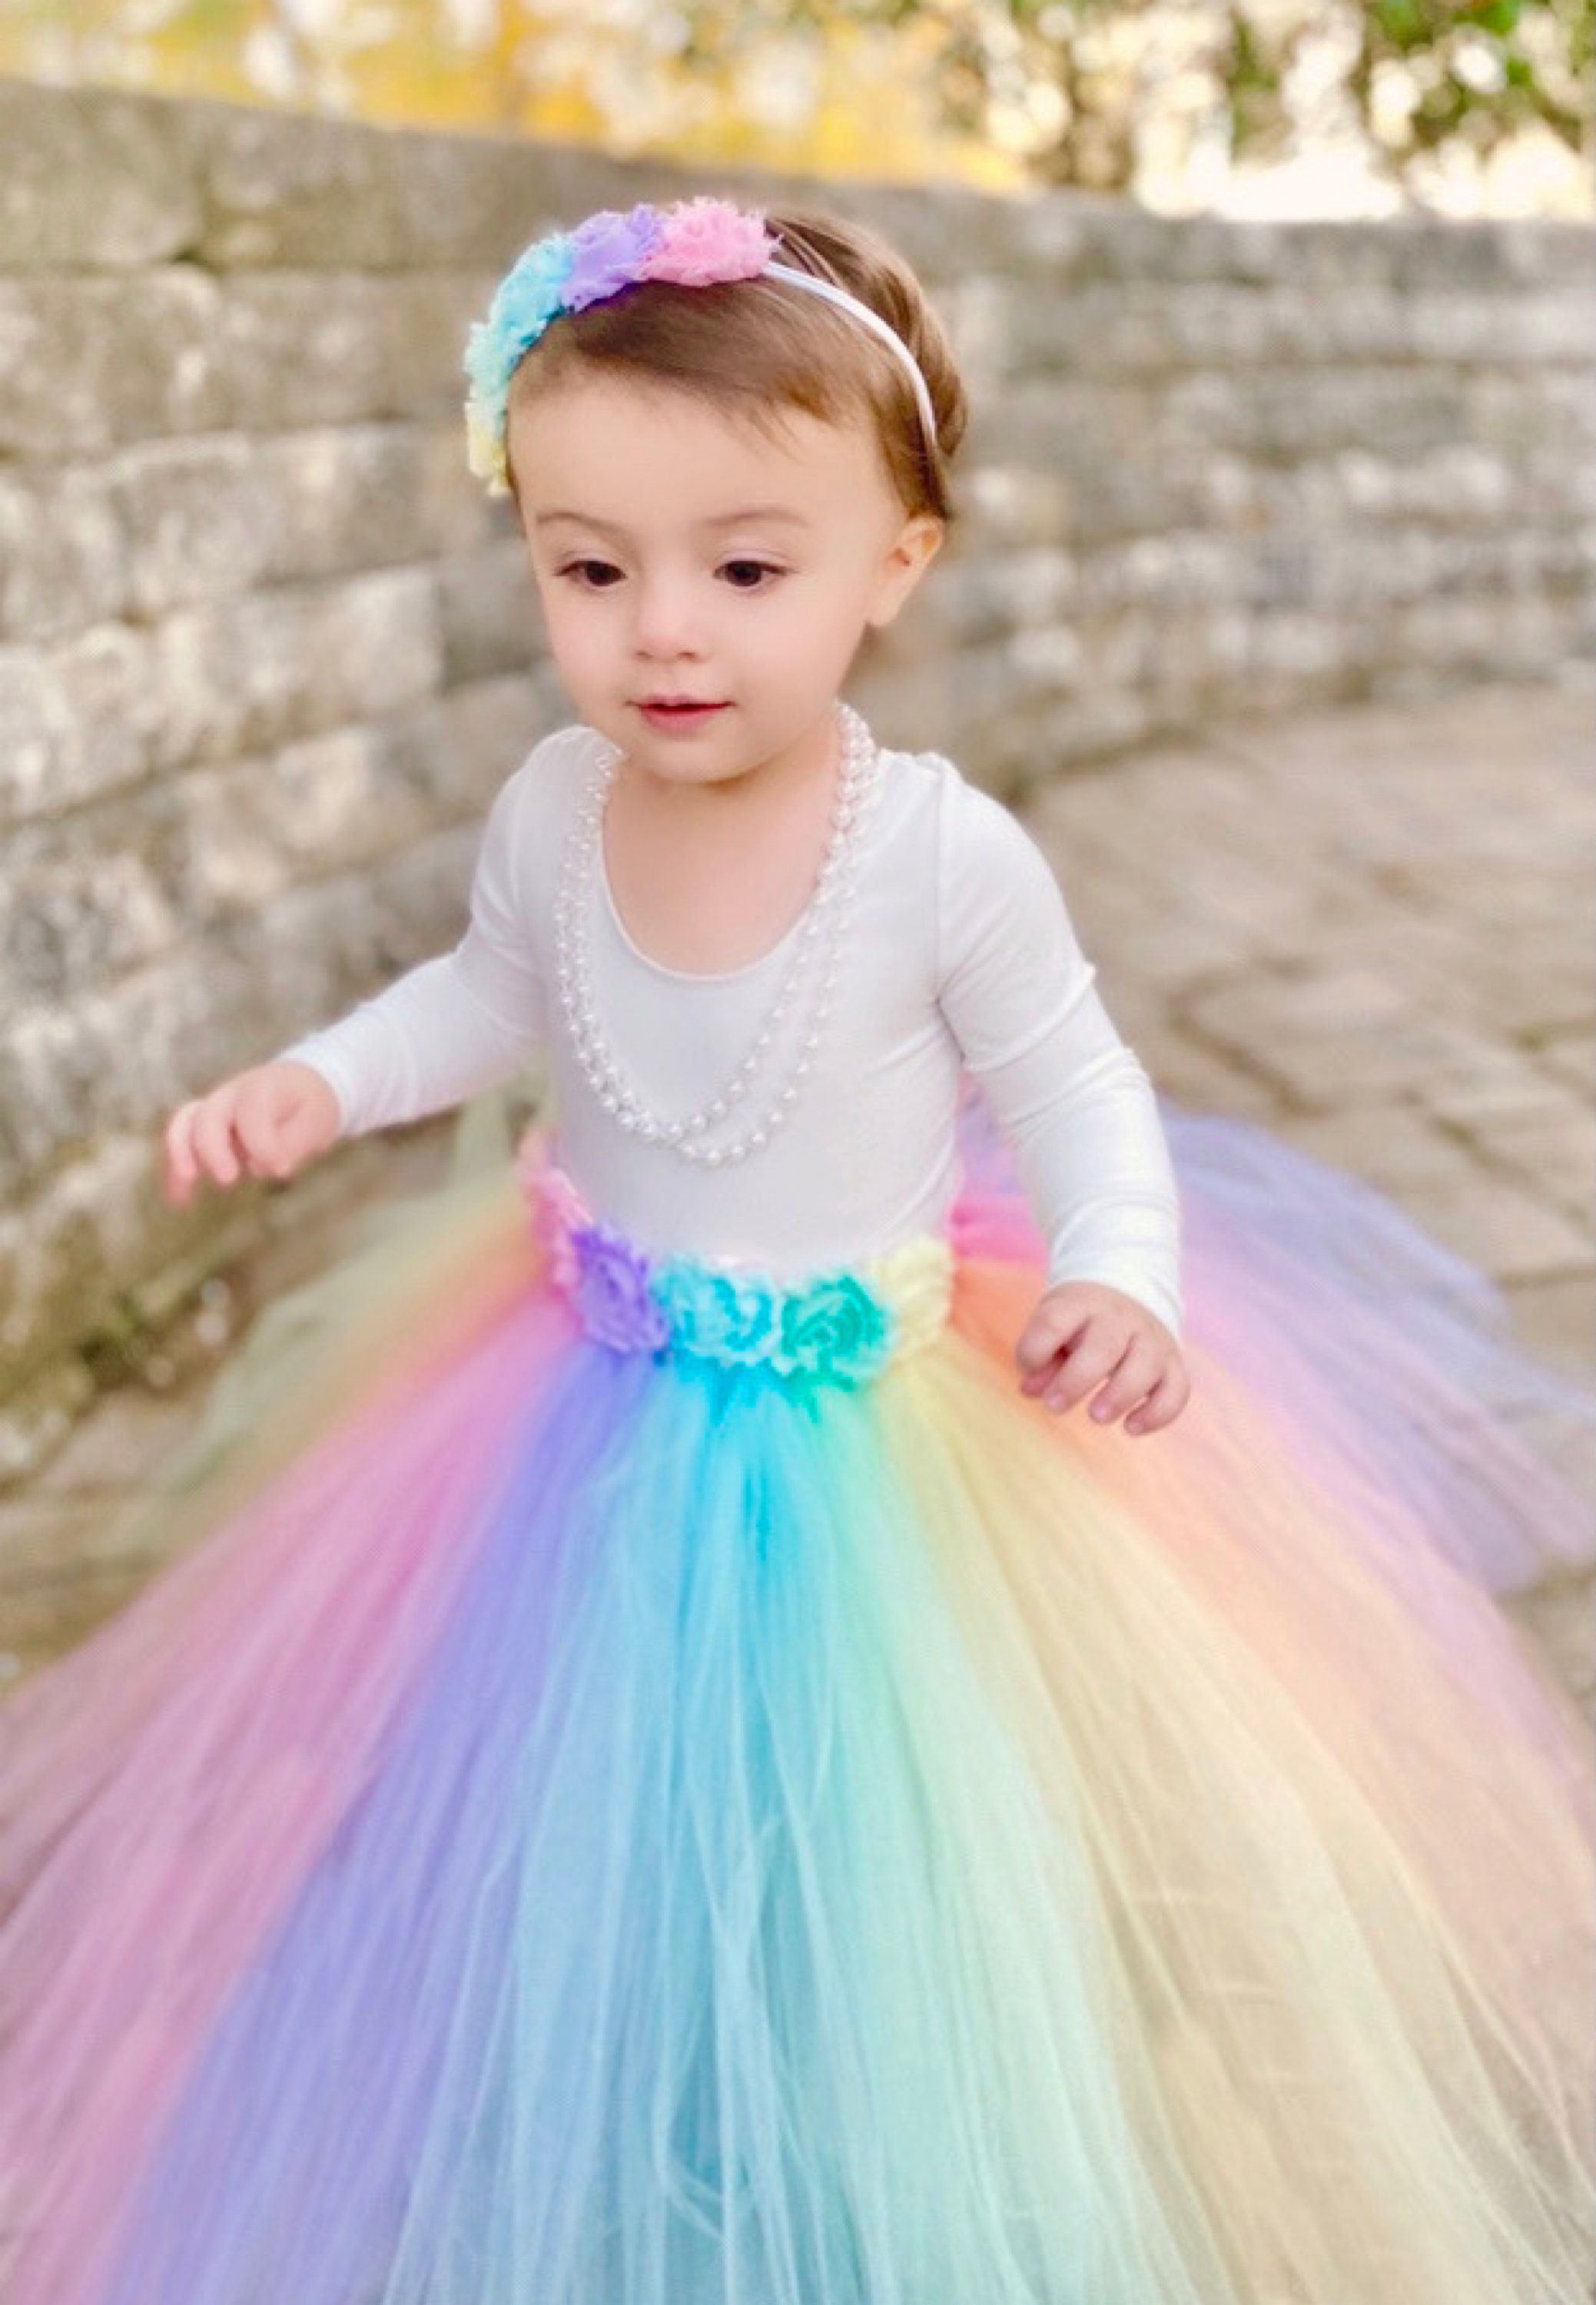 Filles Arc-en-ciel Licorne Fantaisie Princesse Robe Enfants Flower Pageant  Party Robe Sans manches Volants Robes